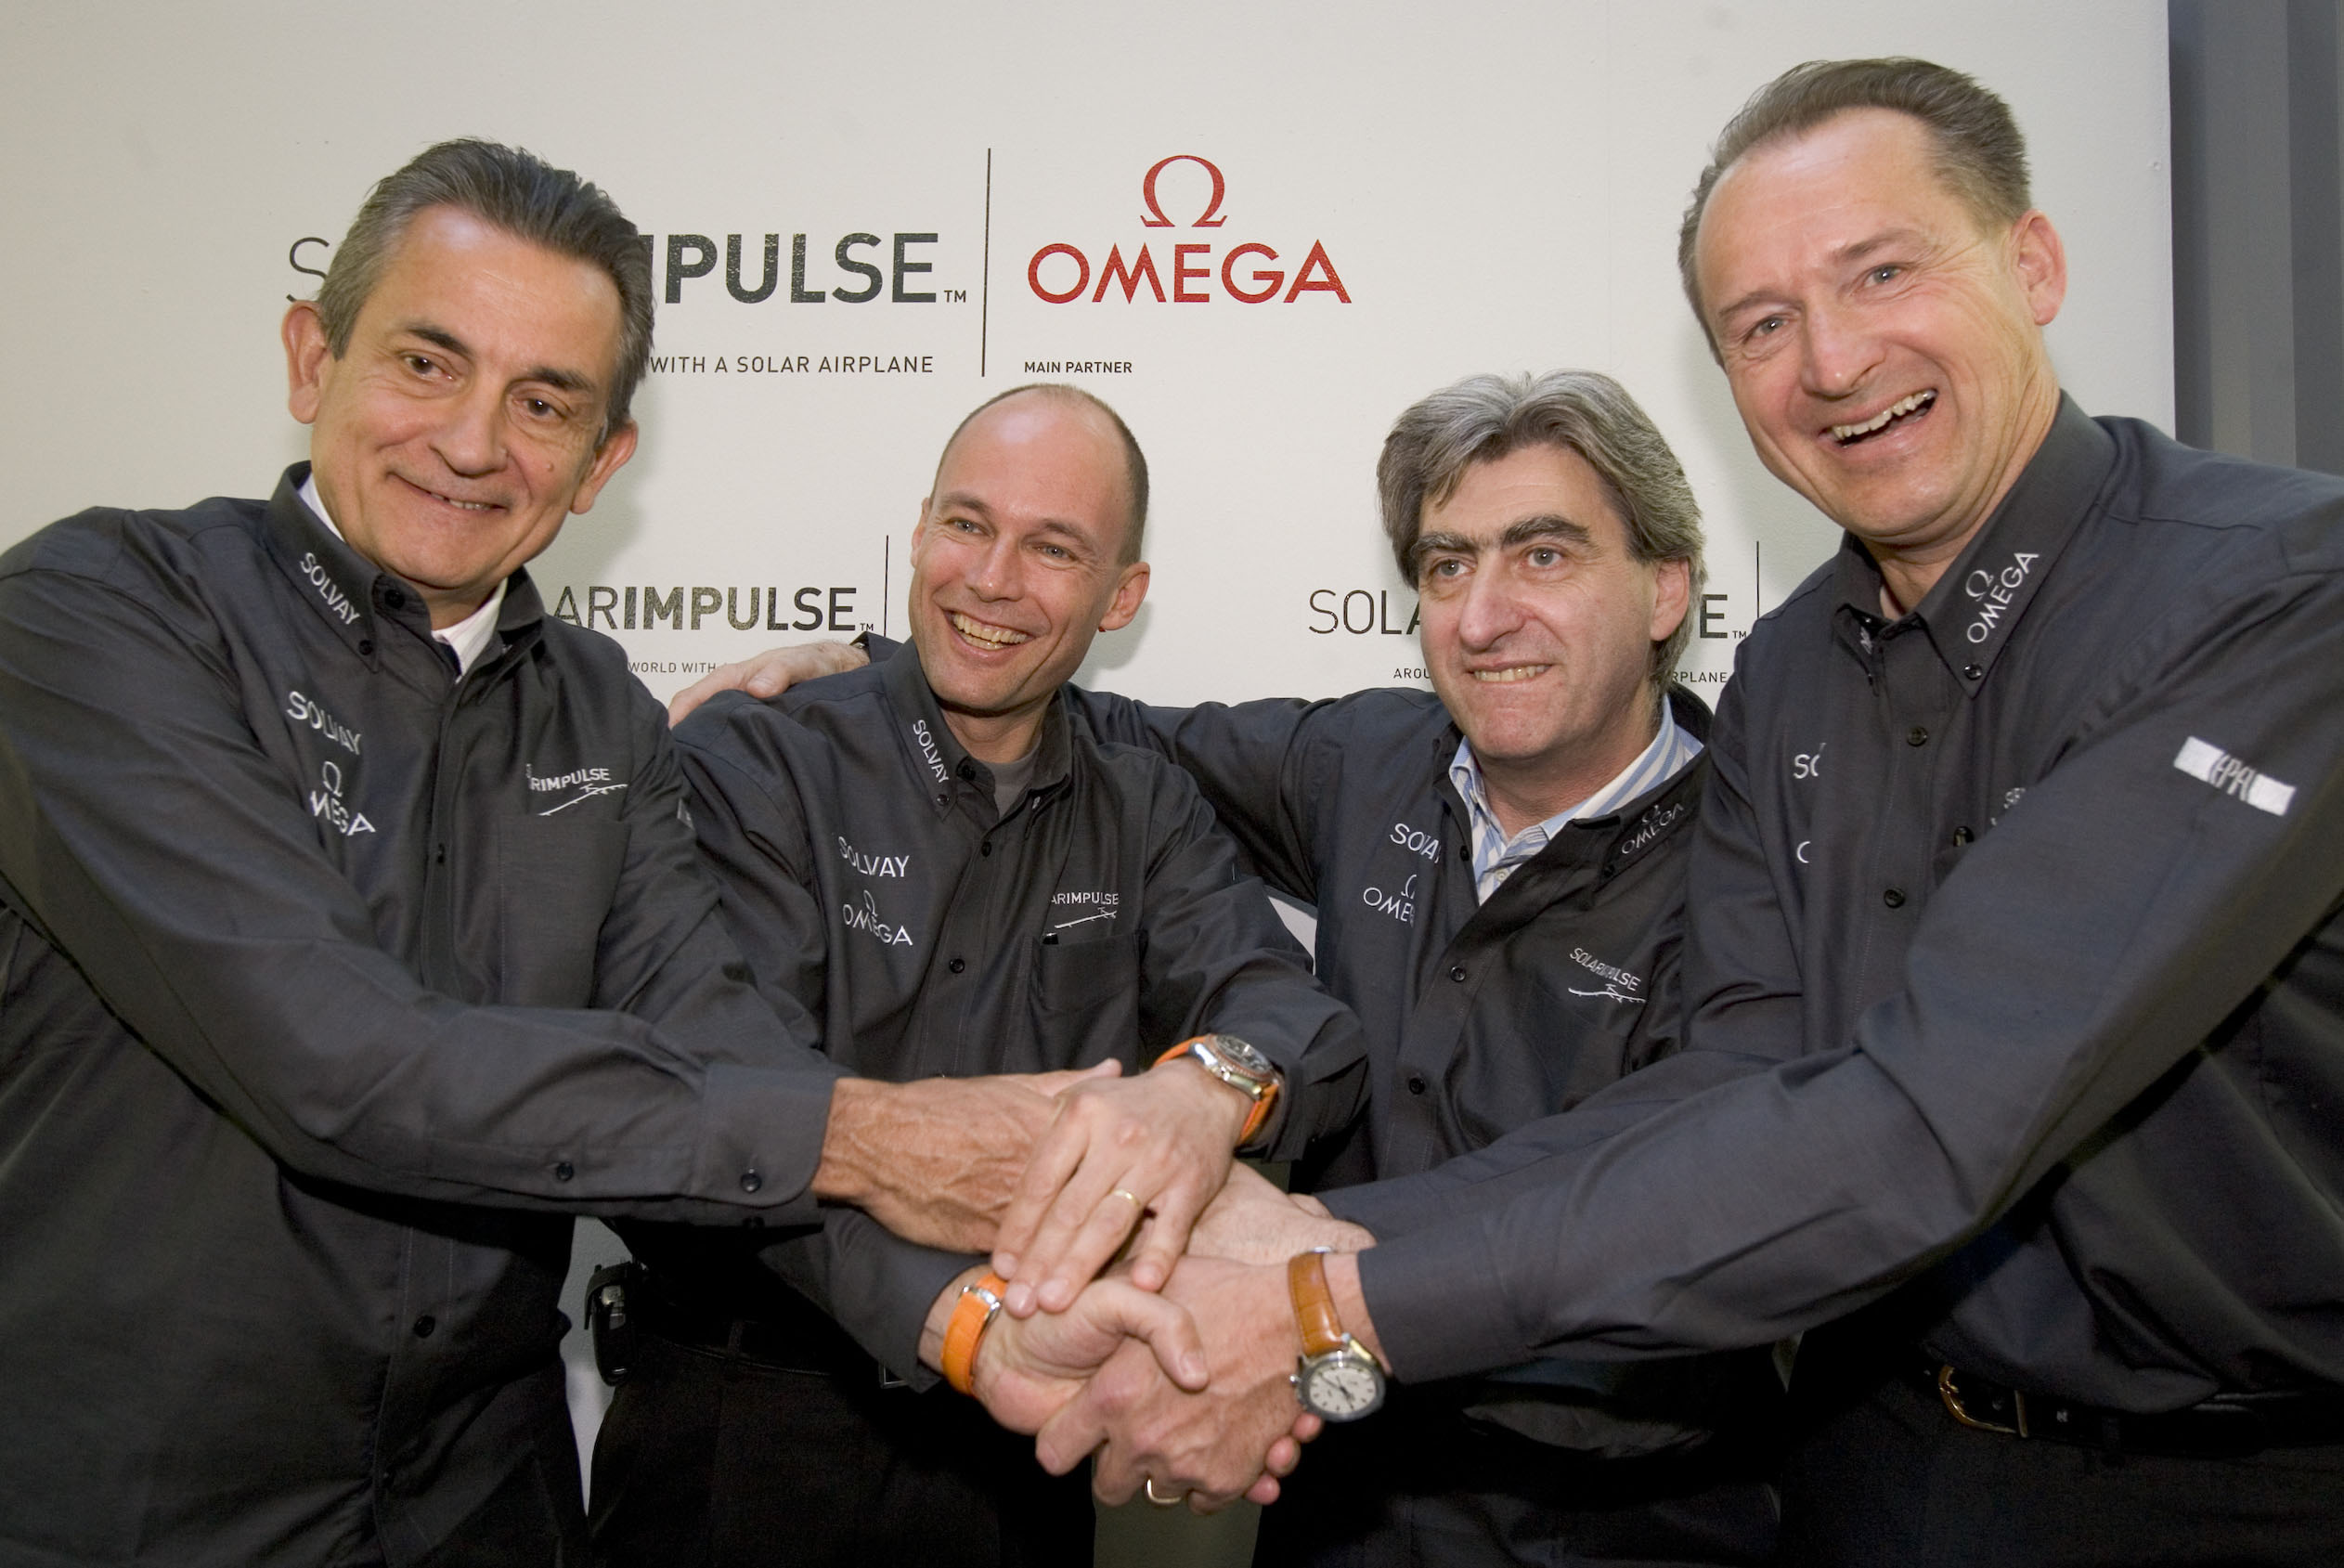 2006 OMEGA se convierte en patrocinador principal